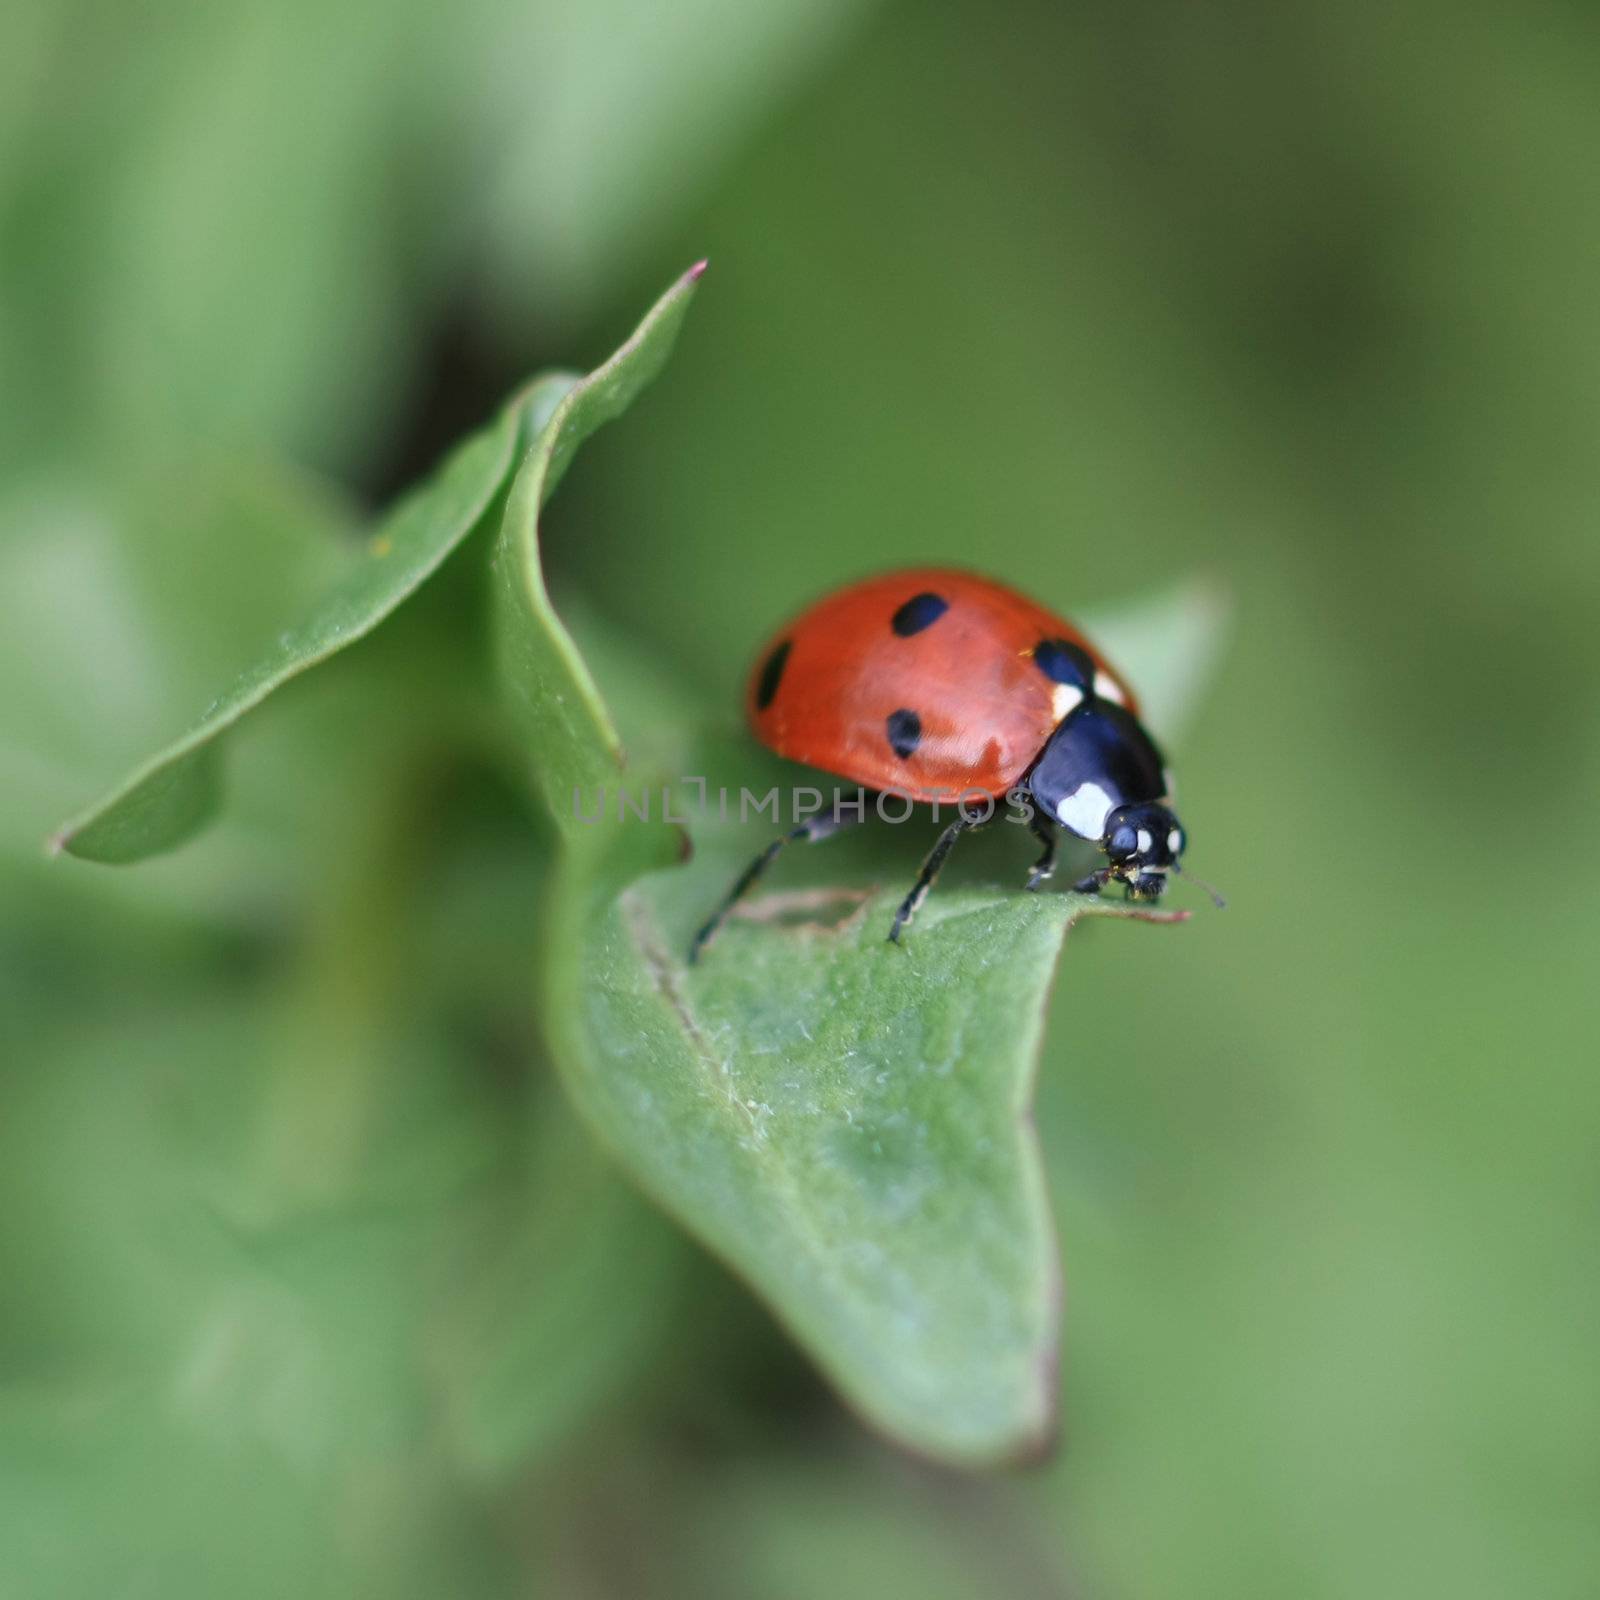 Colorful ladybug crawling on a leaf